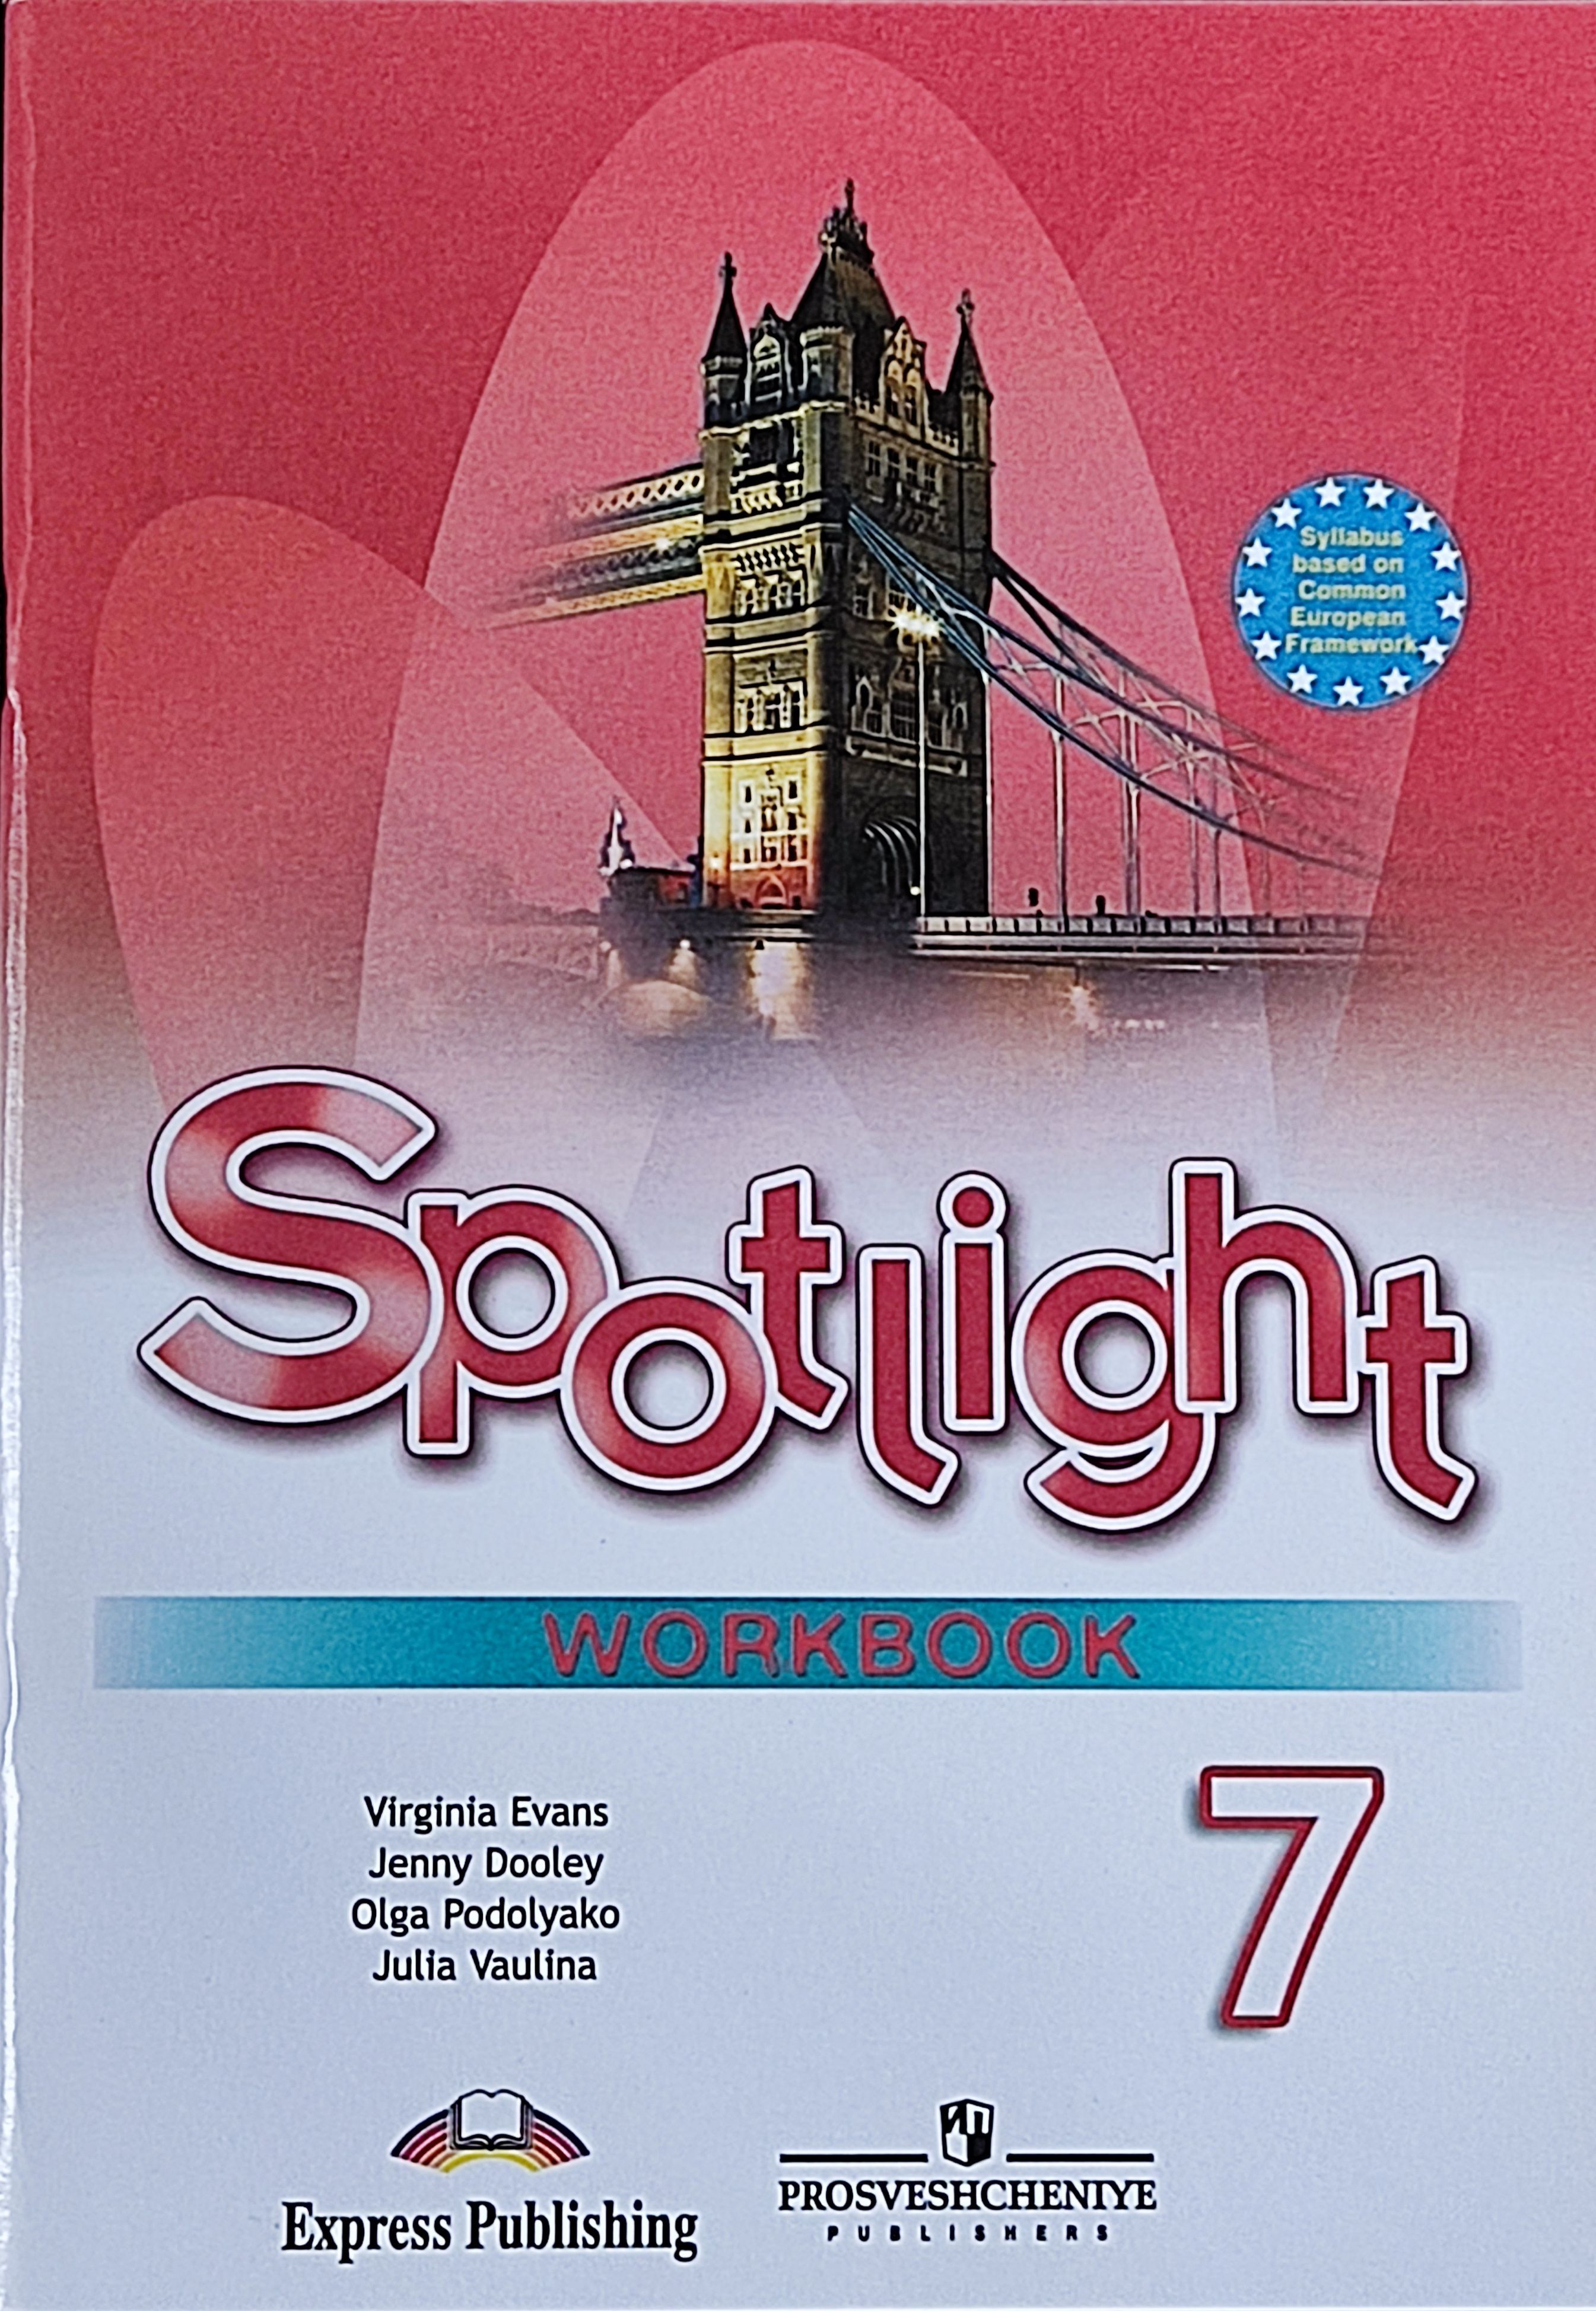 Английский язык 5 класс желтая. Английский язык 5 класс Spotlight Workbook. Рабочая тетрадь по английскому языку 5 класс Spotlight. Spotlight 5 Workbook английский язык Эванс. Английский язык 9 класс (Spotlight) ваулина ю.е. рабоч тетрадь.